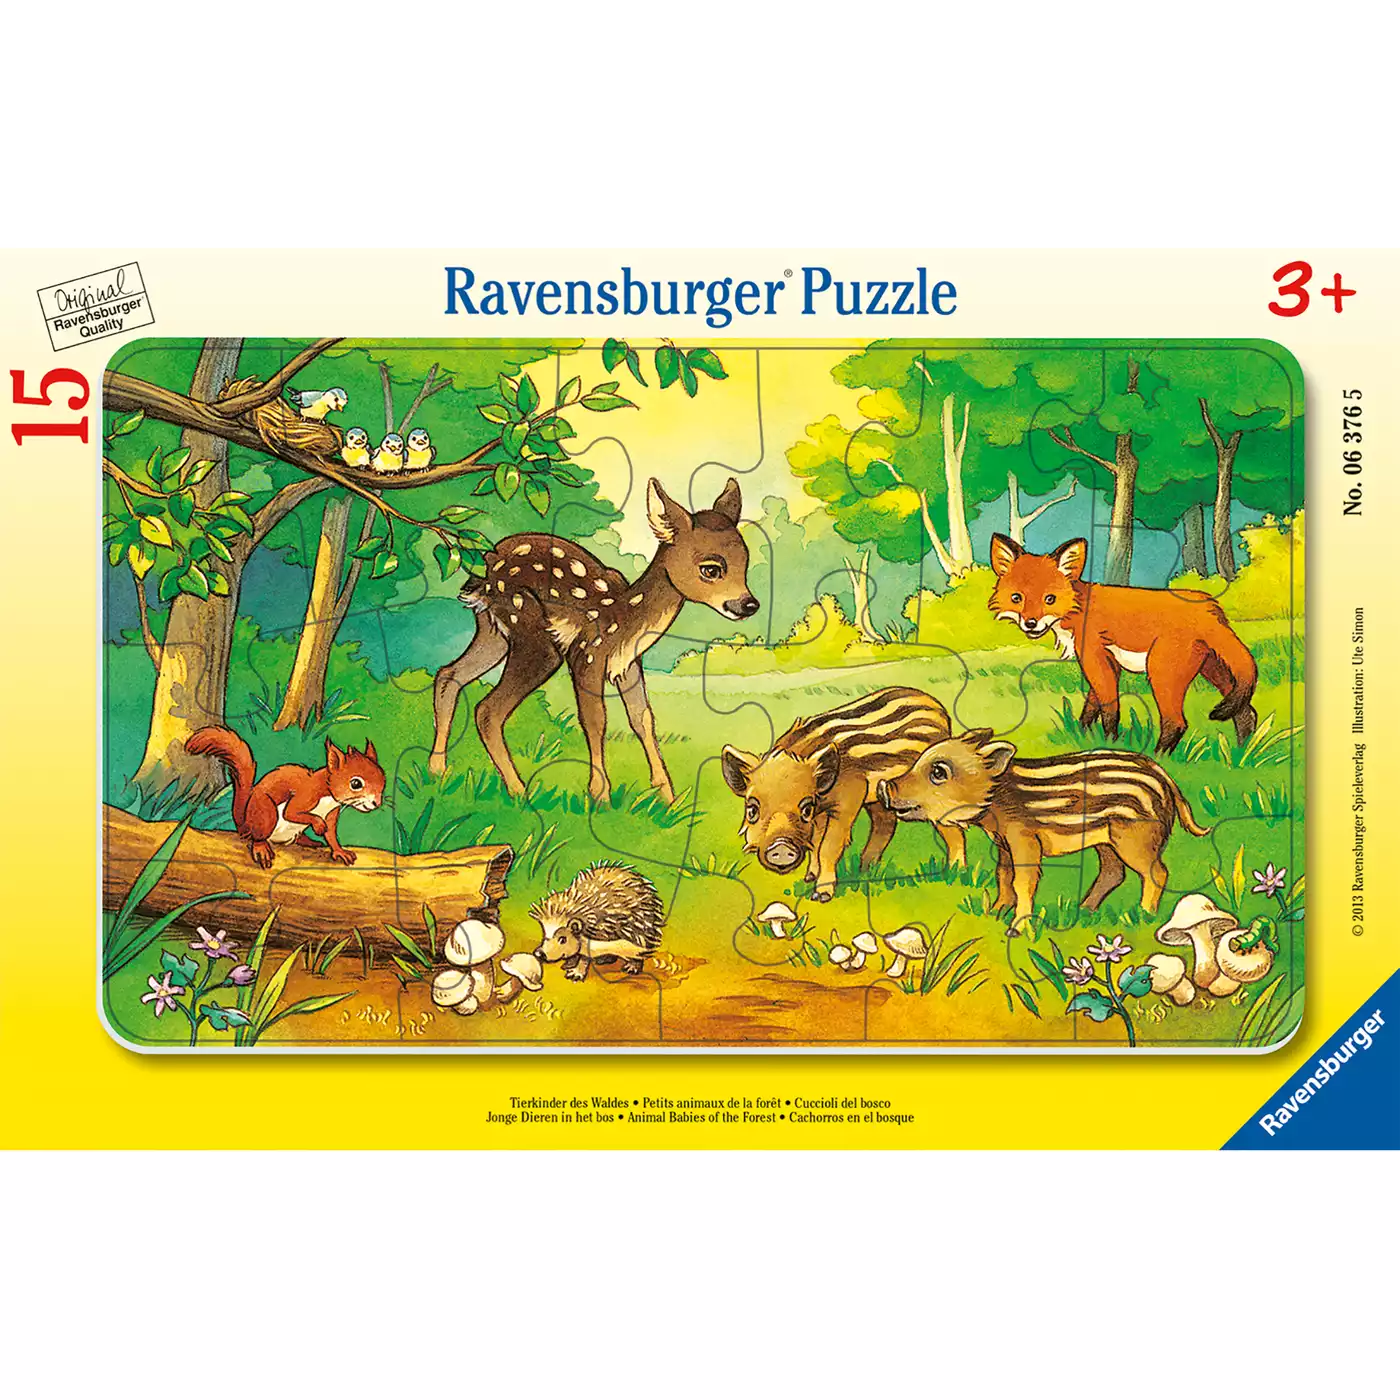 Kinderpuzzle Tierkinder des Waldes Ravensburger 2000561512101 1